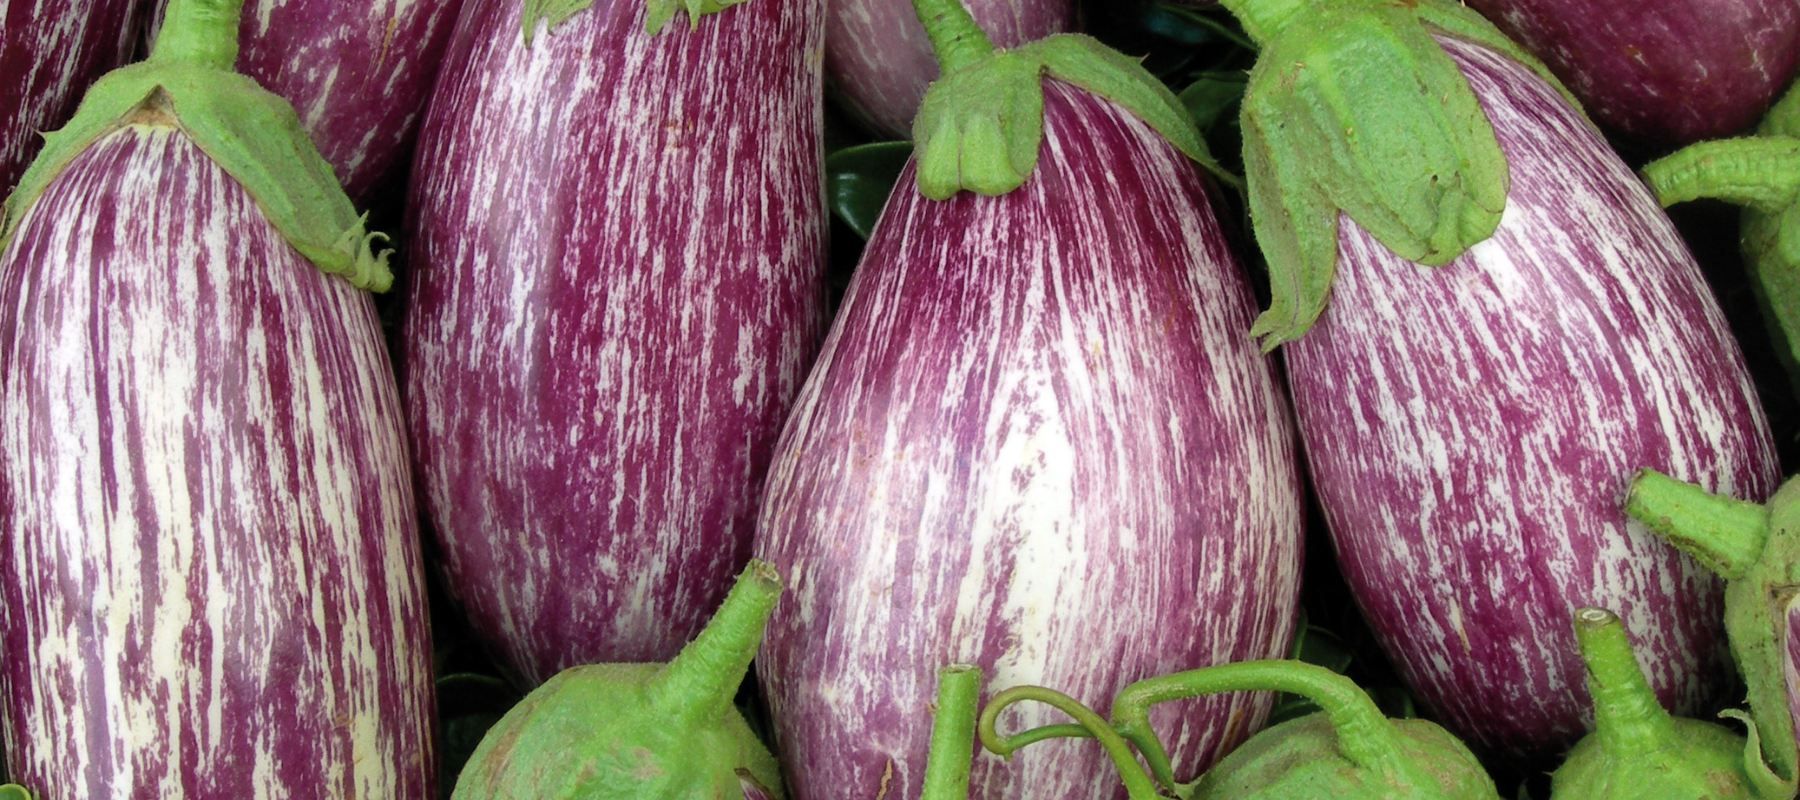 How to Grow Eggplant (Aubergine)